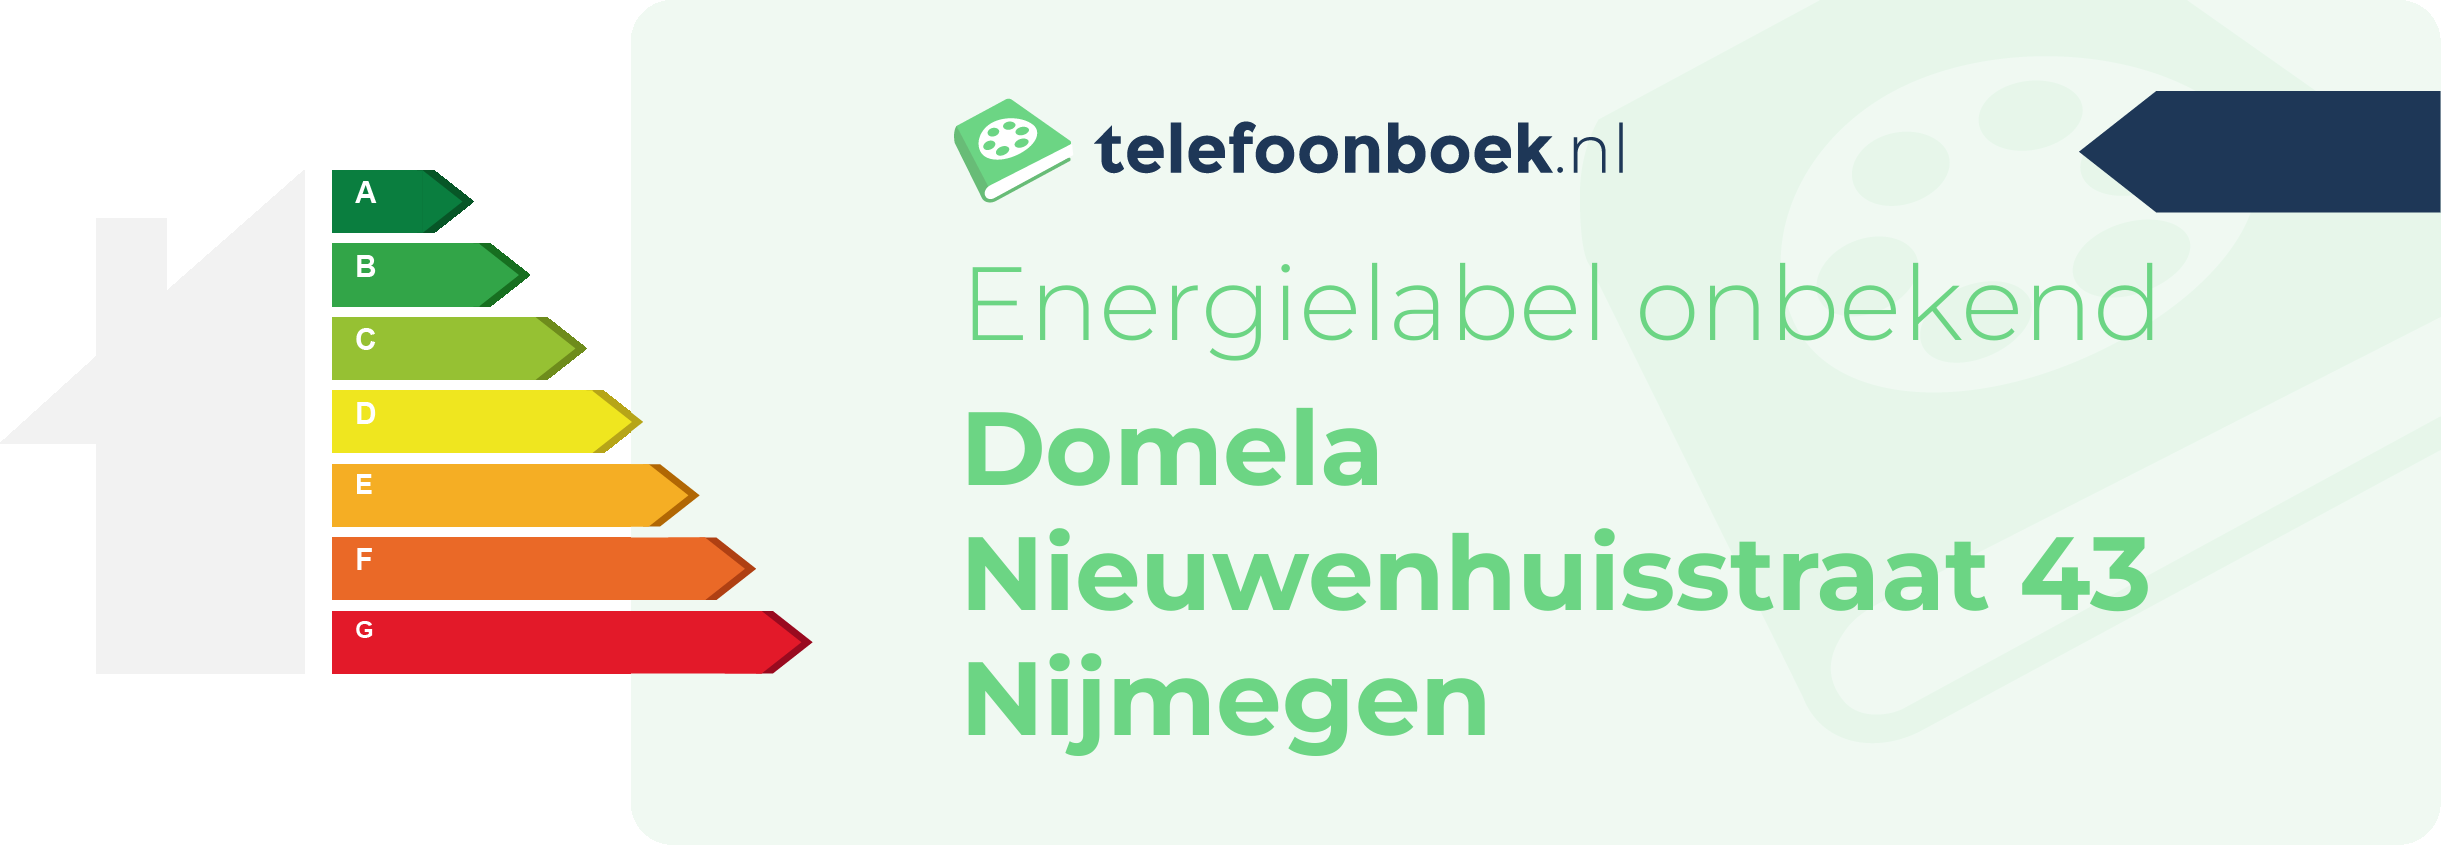 Energielabel Domela Nieuwenhuisstraat 43 Nijmegen